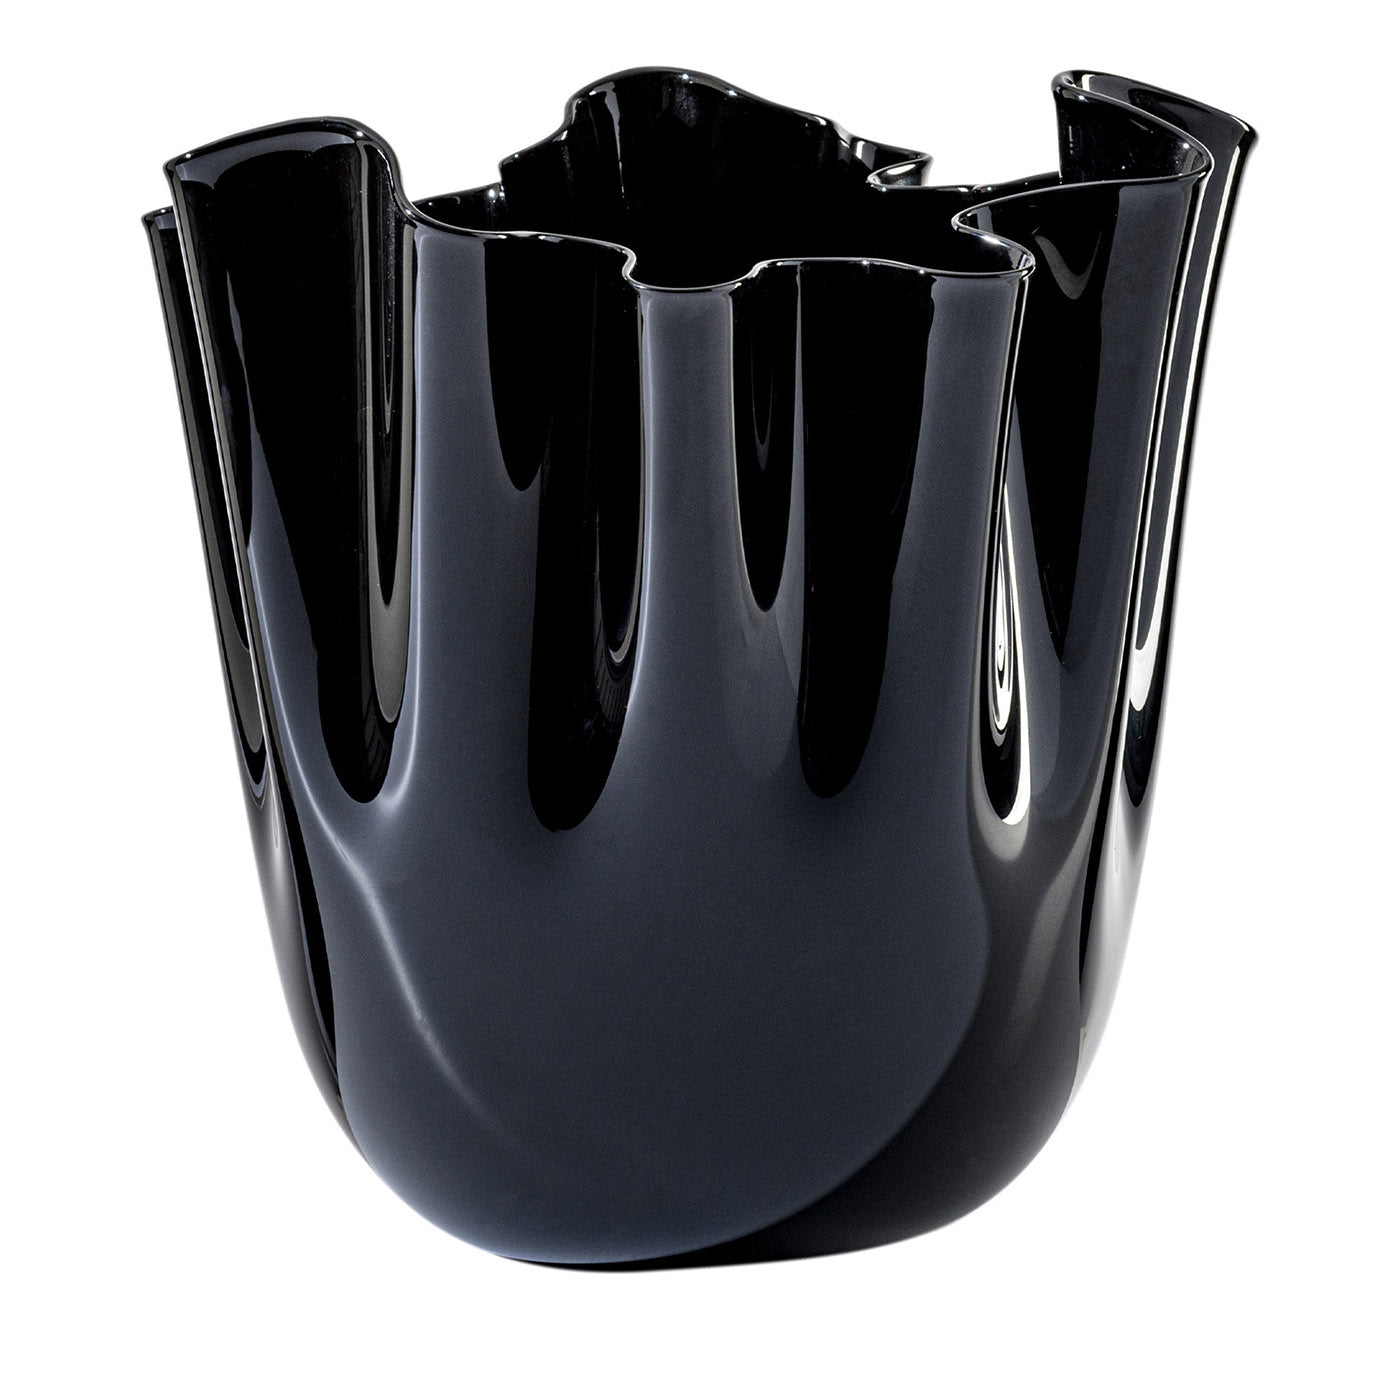 Fazzoletto Black Tall Vase by Paolo Venini and Fulvio Bianconi - Main view